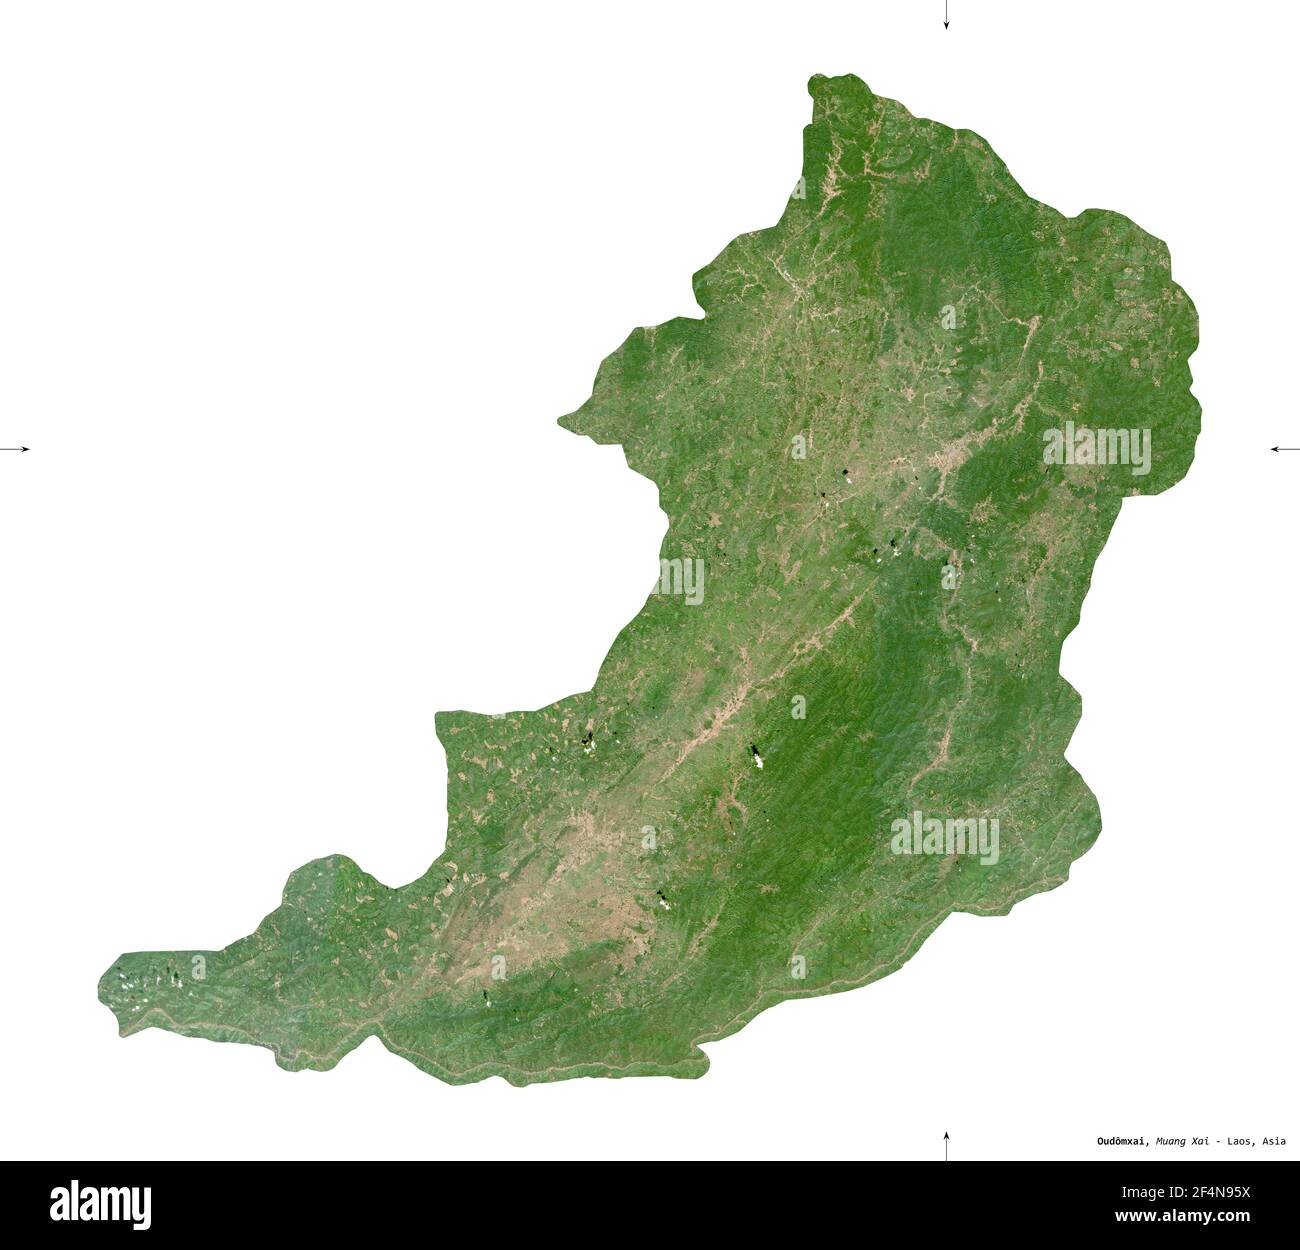 Oudomxai, provincia del Laos. Immagini satellitari Sentinel-2. Forma isolata su solido bianco. Descrizione, ubicazione della capitale. Contiene la copiatrice modificata Foto Stock